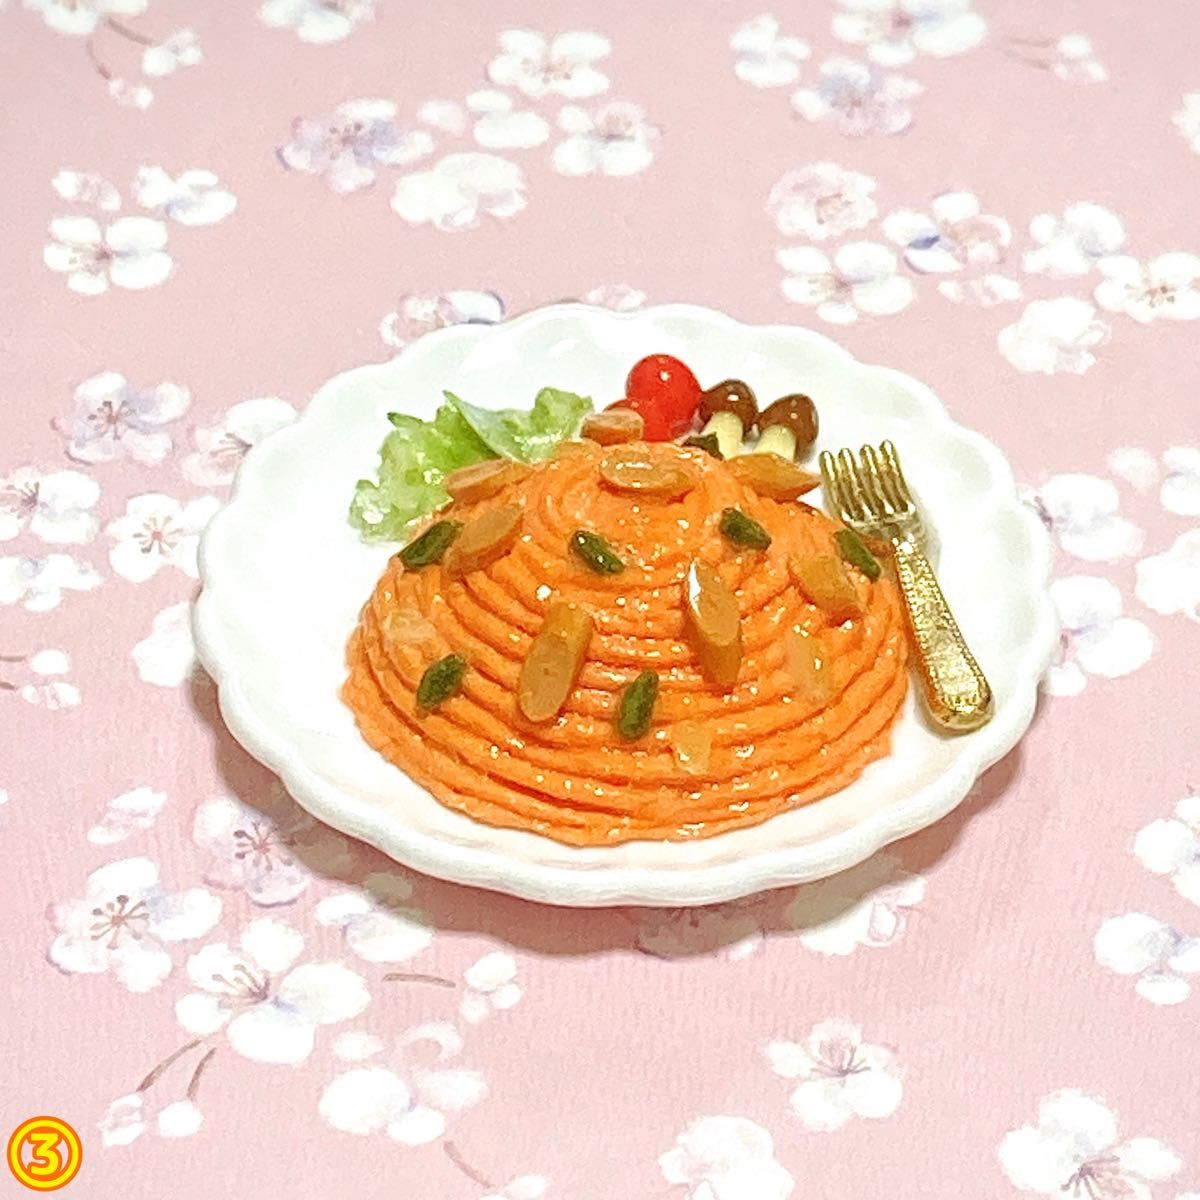 ナポリタン スパゲティのミニチュア☆粘土 フェイクフード 食品サンプル ままごと ハンドメイド ドールハウス